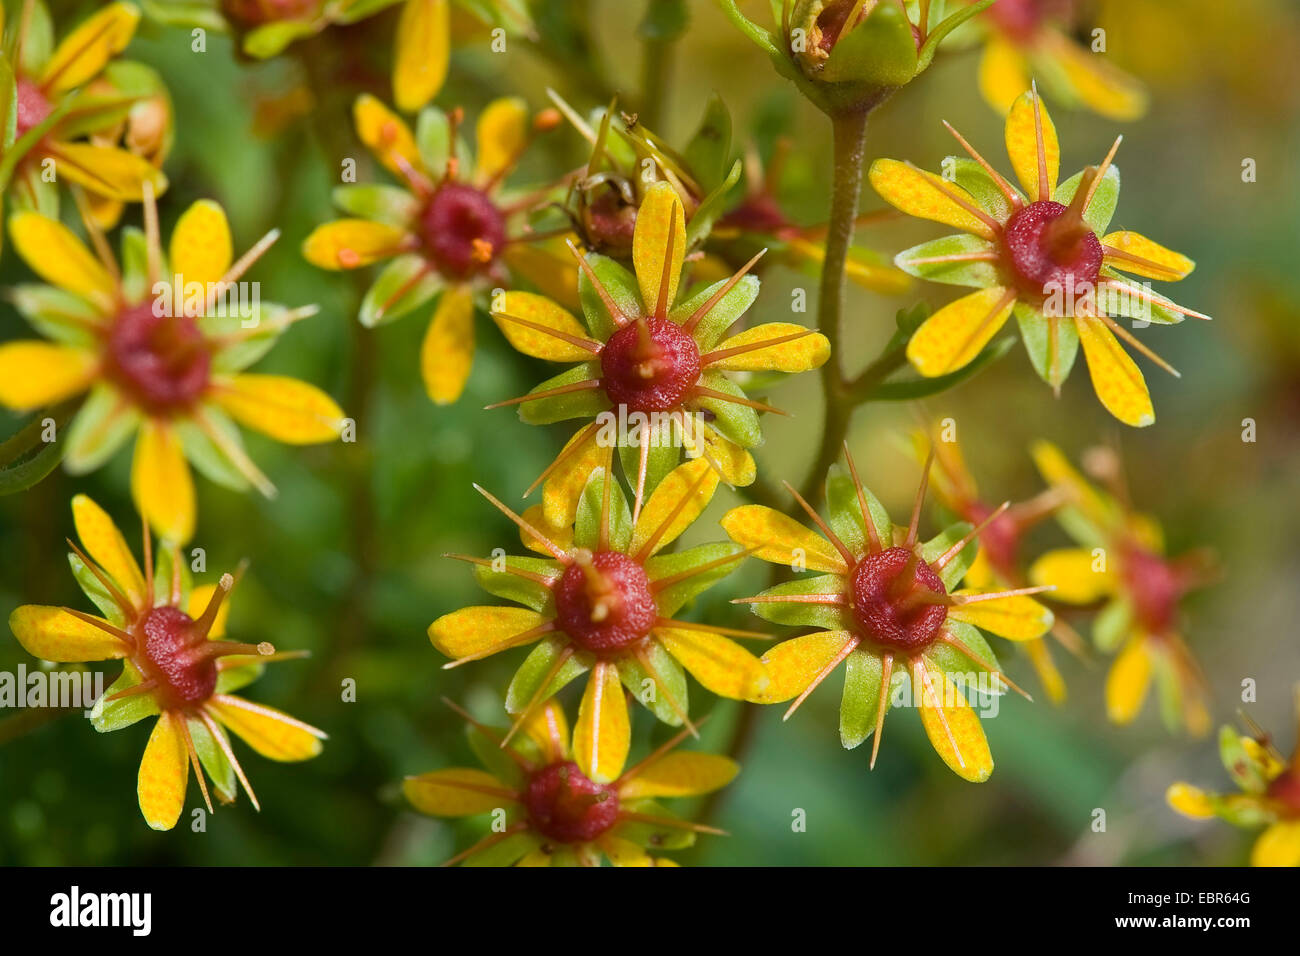 Saxifrage jaune, jaune, la saxifrage à feuilles opposées (Saxifraga aizoides Saxifrage à feuilles persistantes), fleurs, Allemagne Banque D'Images